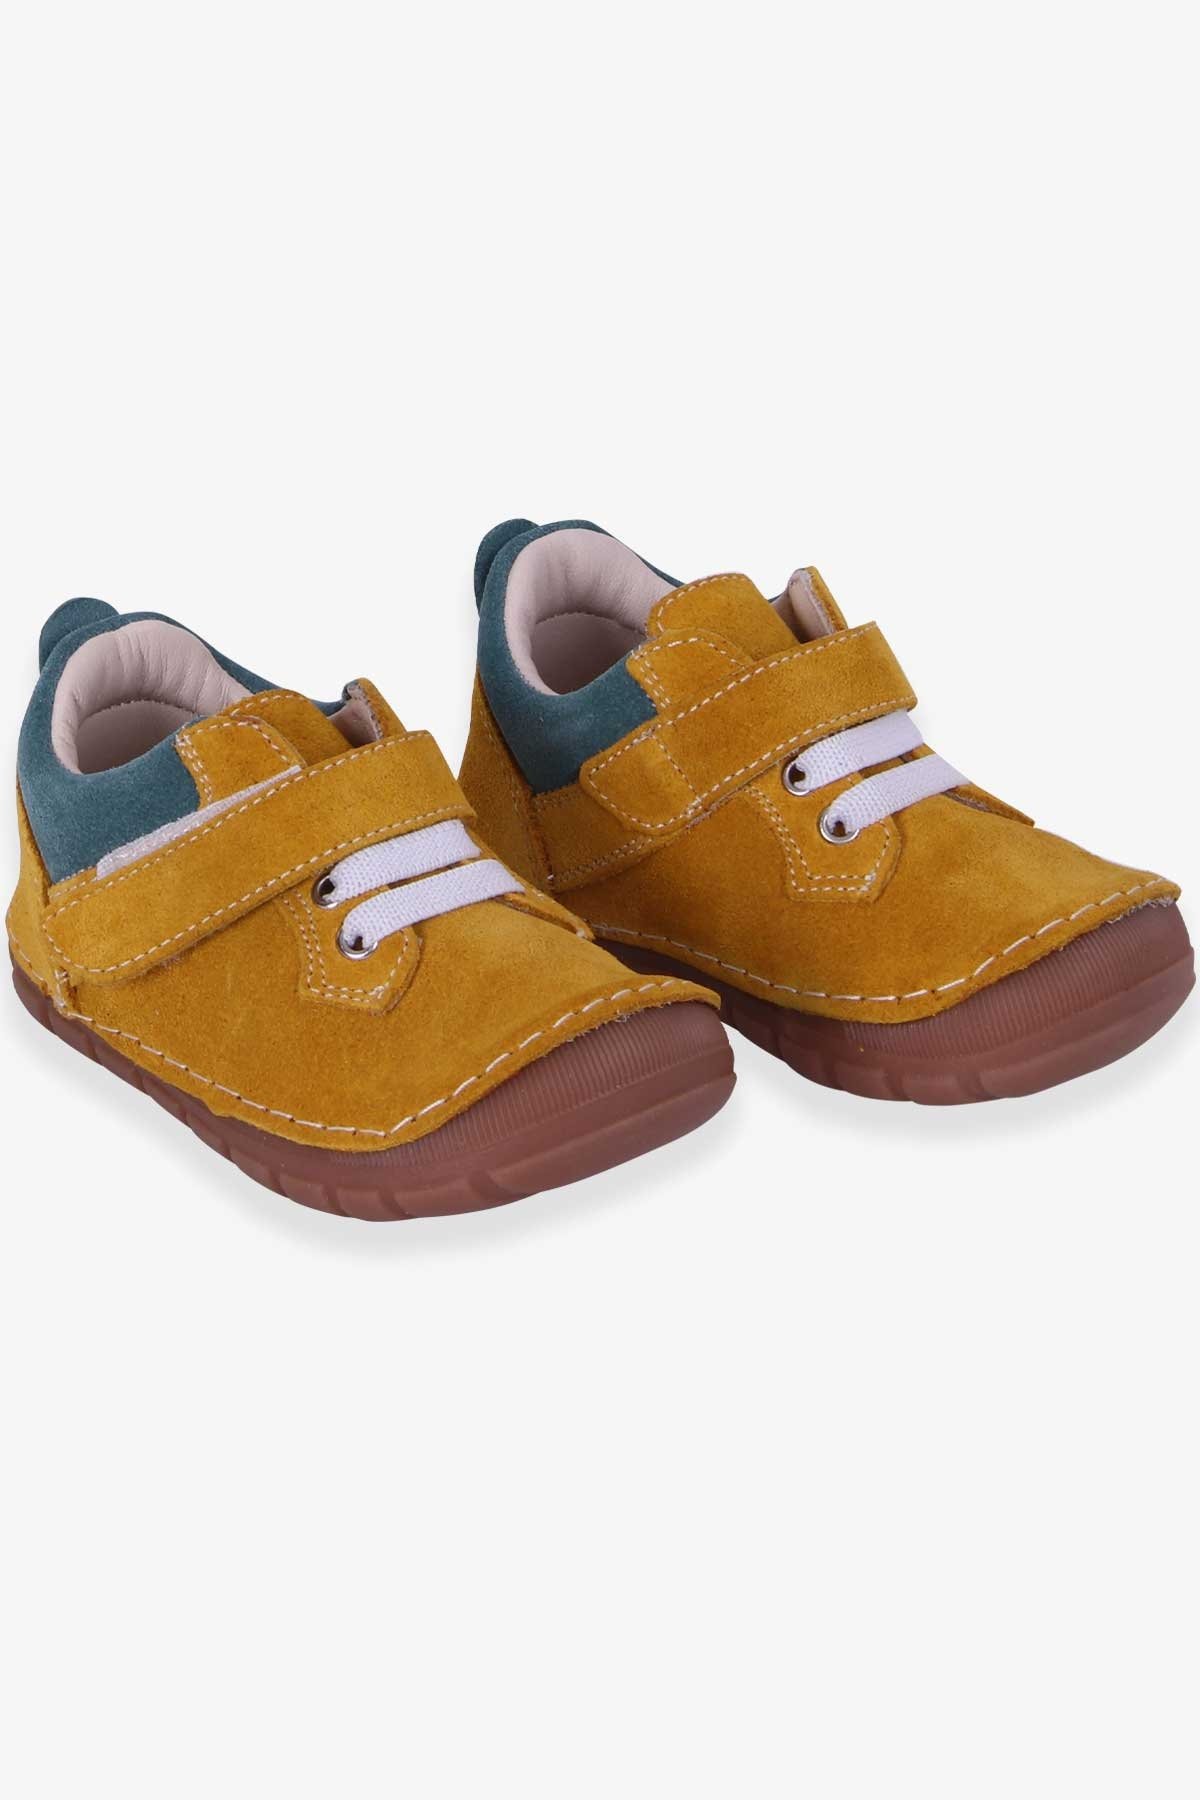 Erkek Çocuk Cırtlı Süet Ayakkabı Hardal Sarı 19-20 Numara - Tatlı Bebek  Ayakkabıları | Breeze